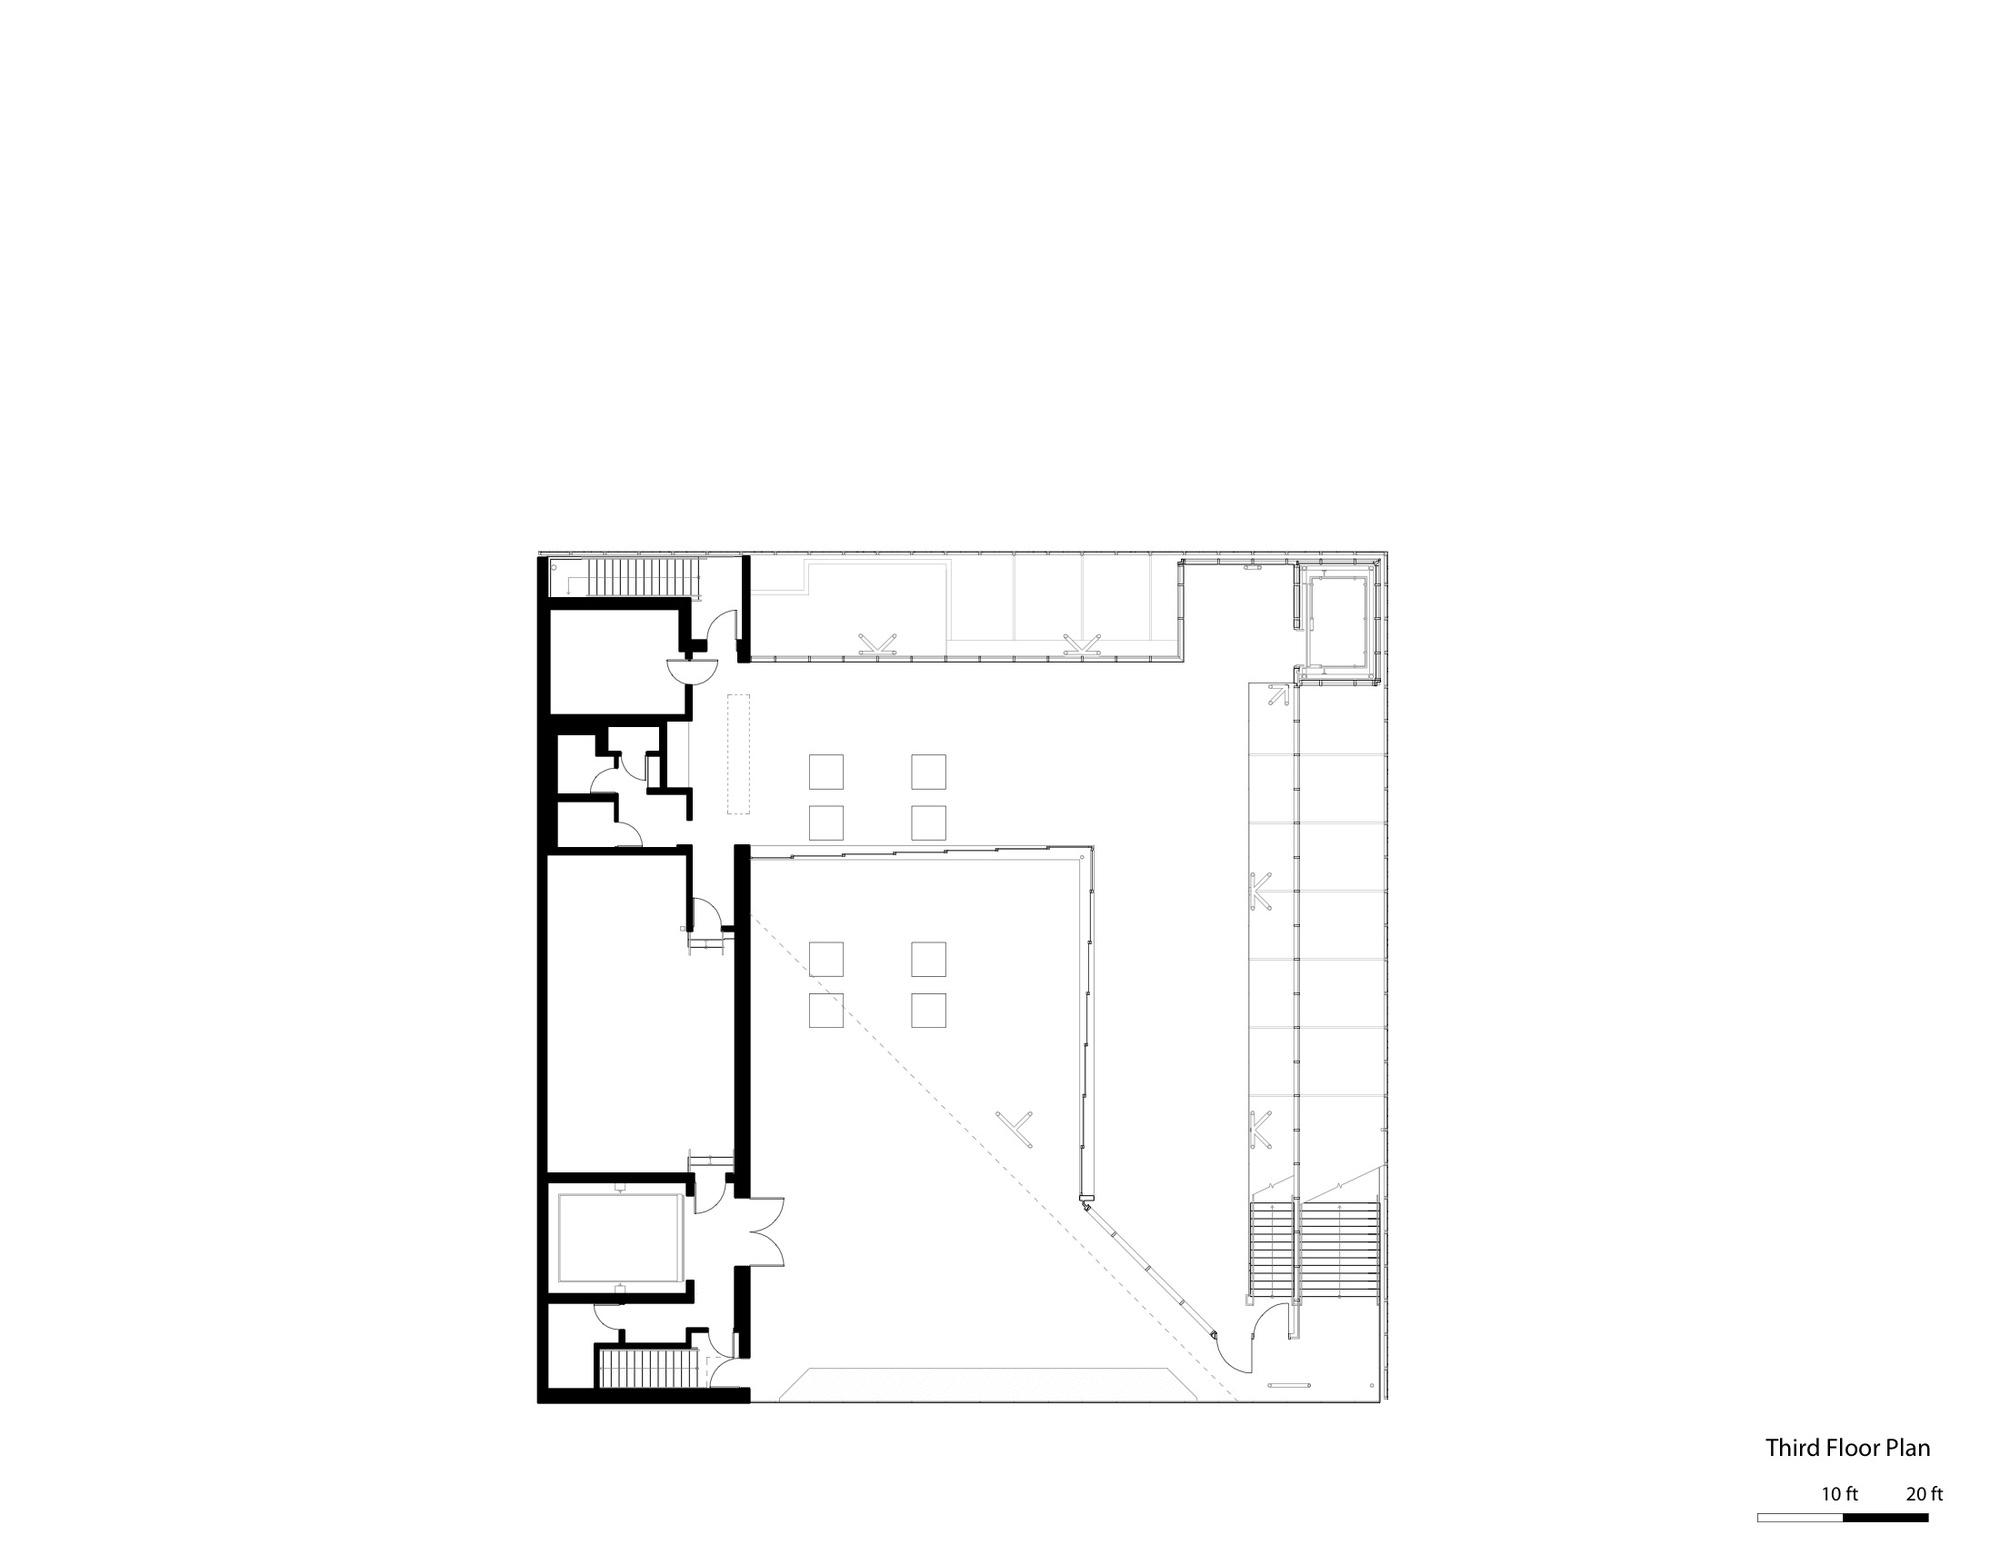 Aspen Art Museum / Shigeru Ban Architects (4)